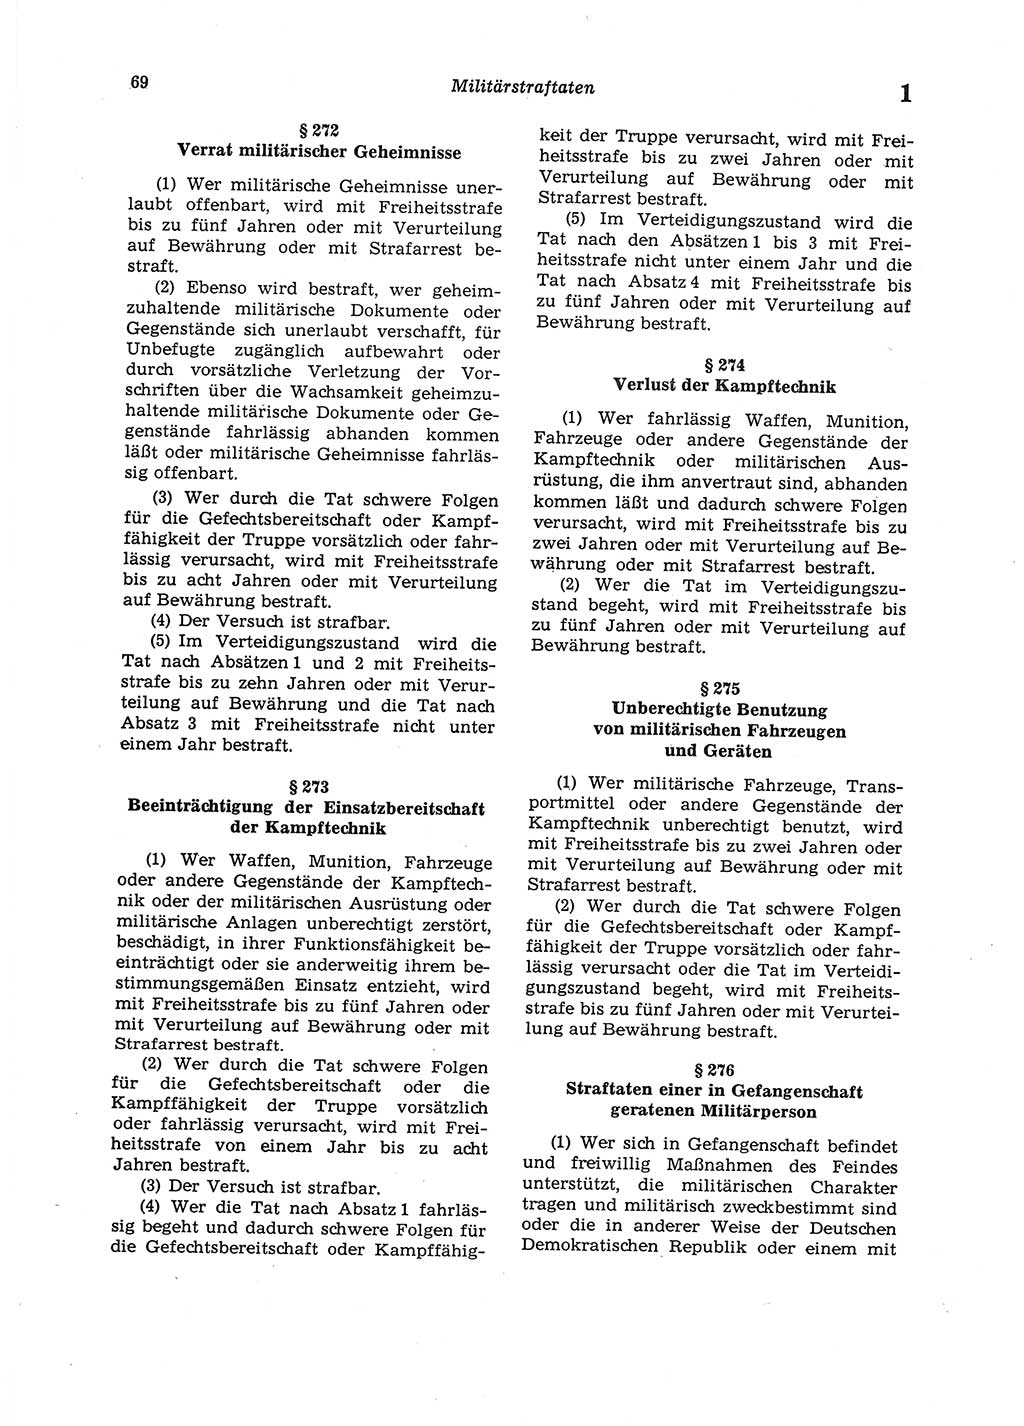 Strafgesetzbuch (StGB) der Deutschen Demokratischen Republik (DDR) 1987, Seite 69 (StGB DDR 1987, S. 69)